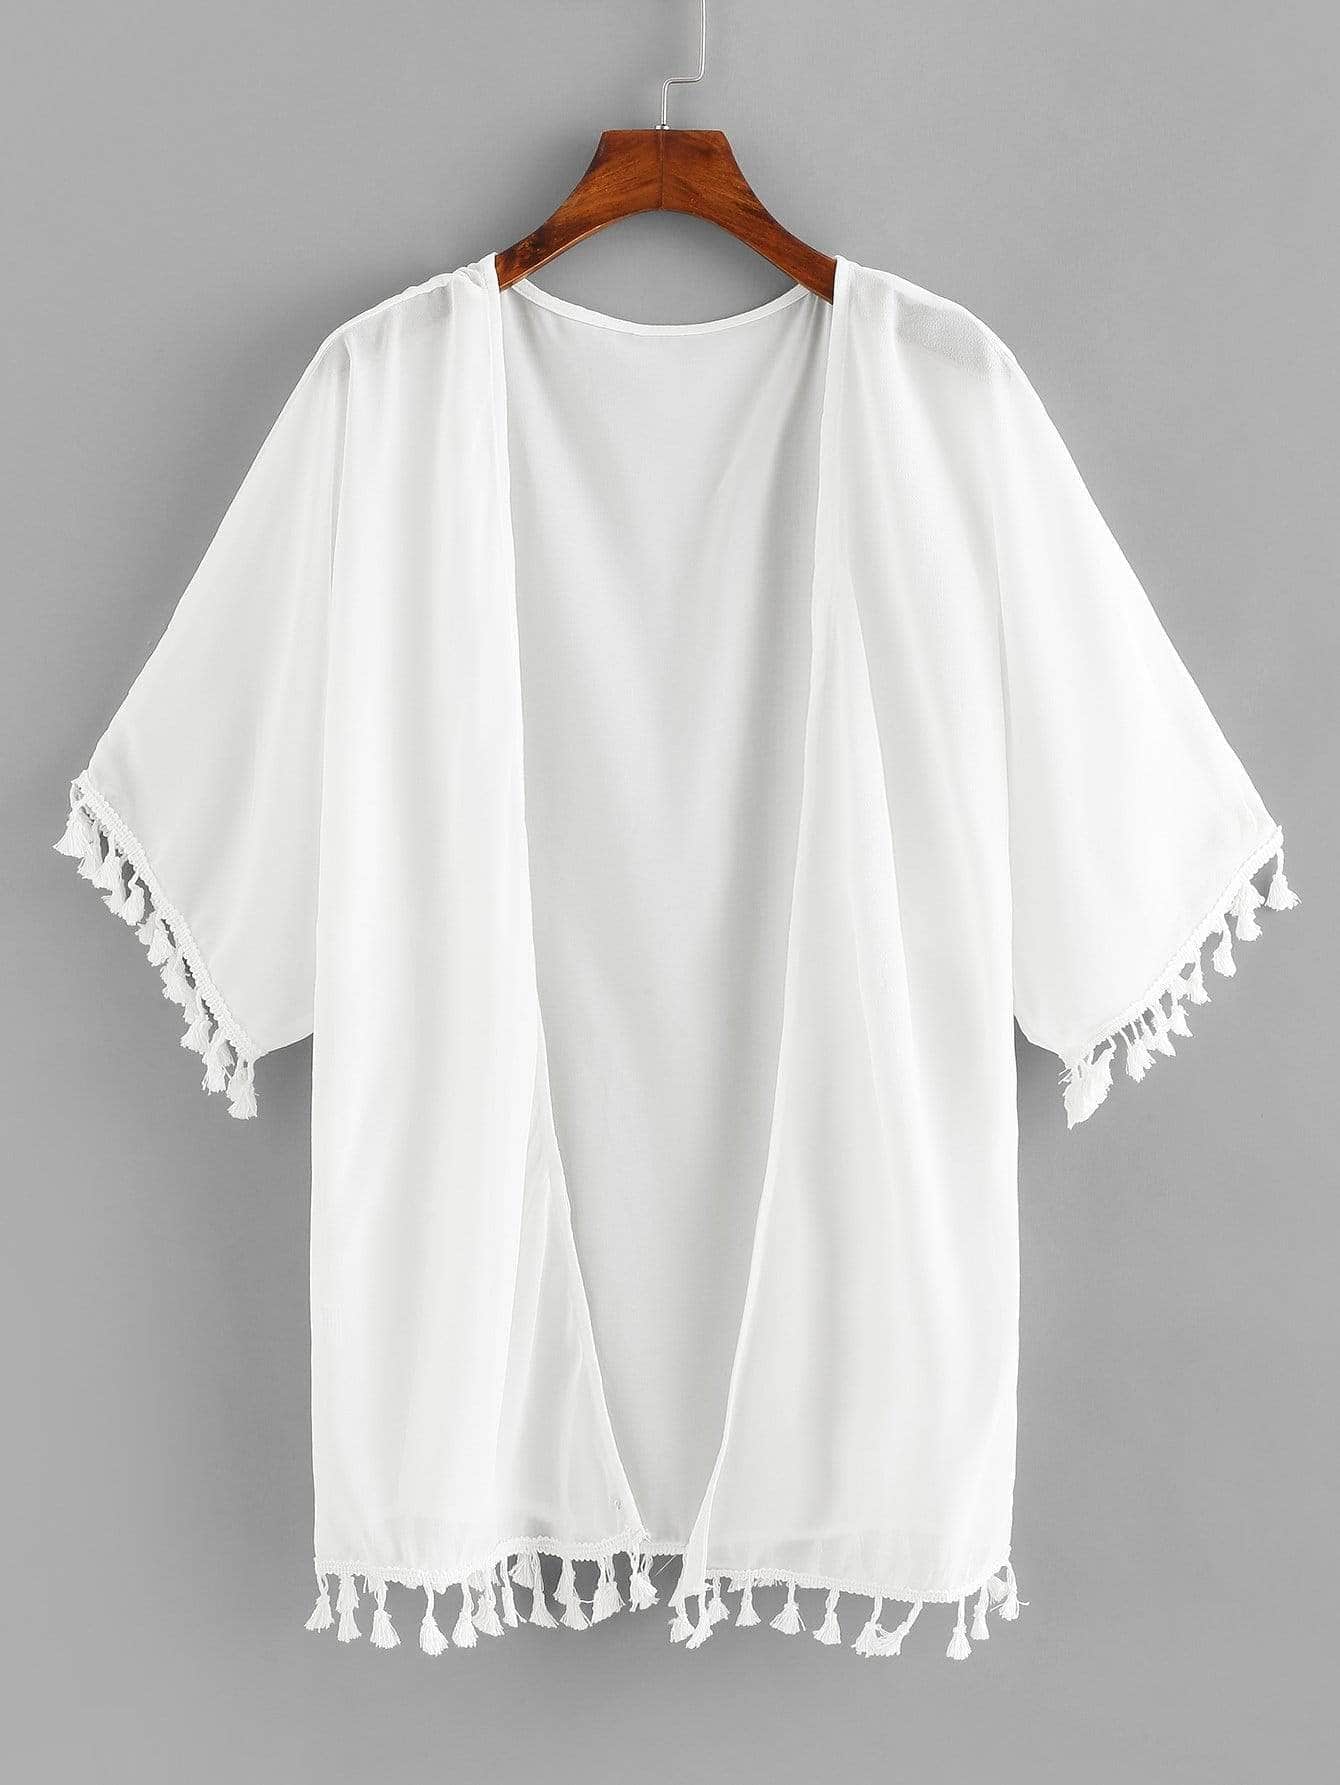 Blanco / S Kimono abierto con borlas